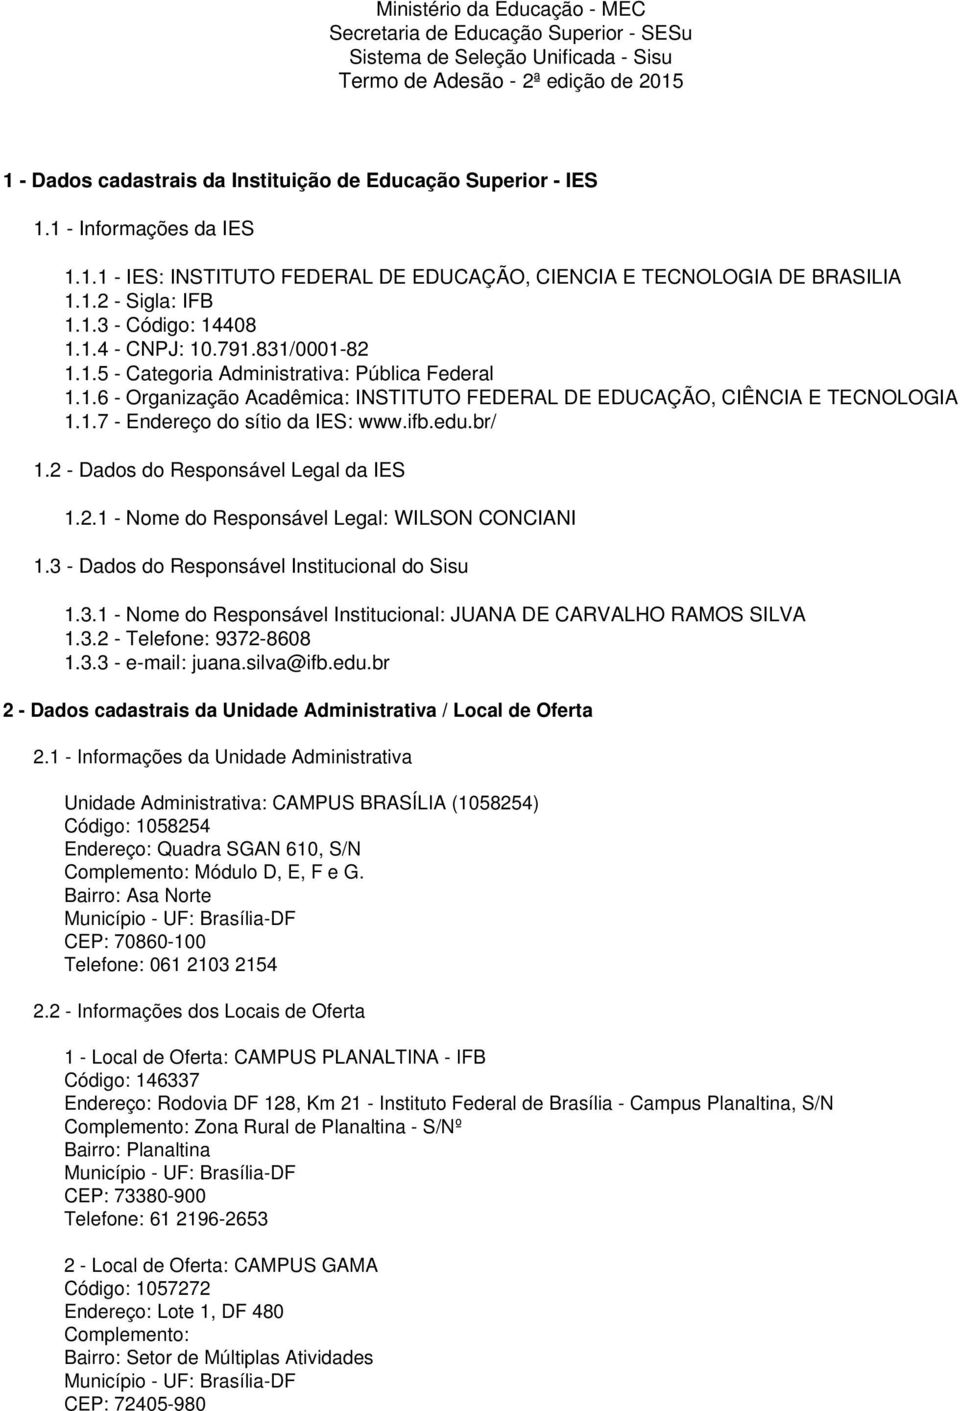 1.6 - Organização Acadêmica: INSTITUTO FEDERAL DE EDUCAÇÃO, CIÊNCIA E TECNOLOGIA 1.1.7 - Endereço do sítio da IES: www.ifb.edu.br/ 1.2 - Dados do Responsável Legal da IES 1.2.1 - Nome do Responsável Legal: WILSON CONCIANI 1.